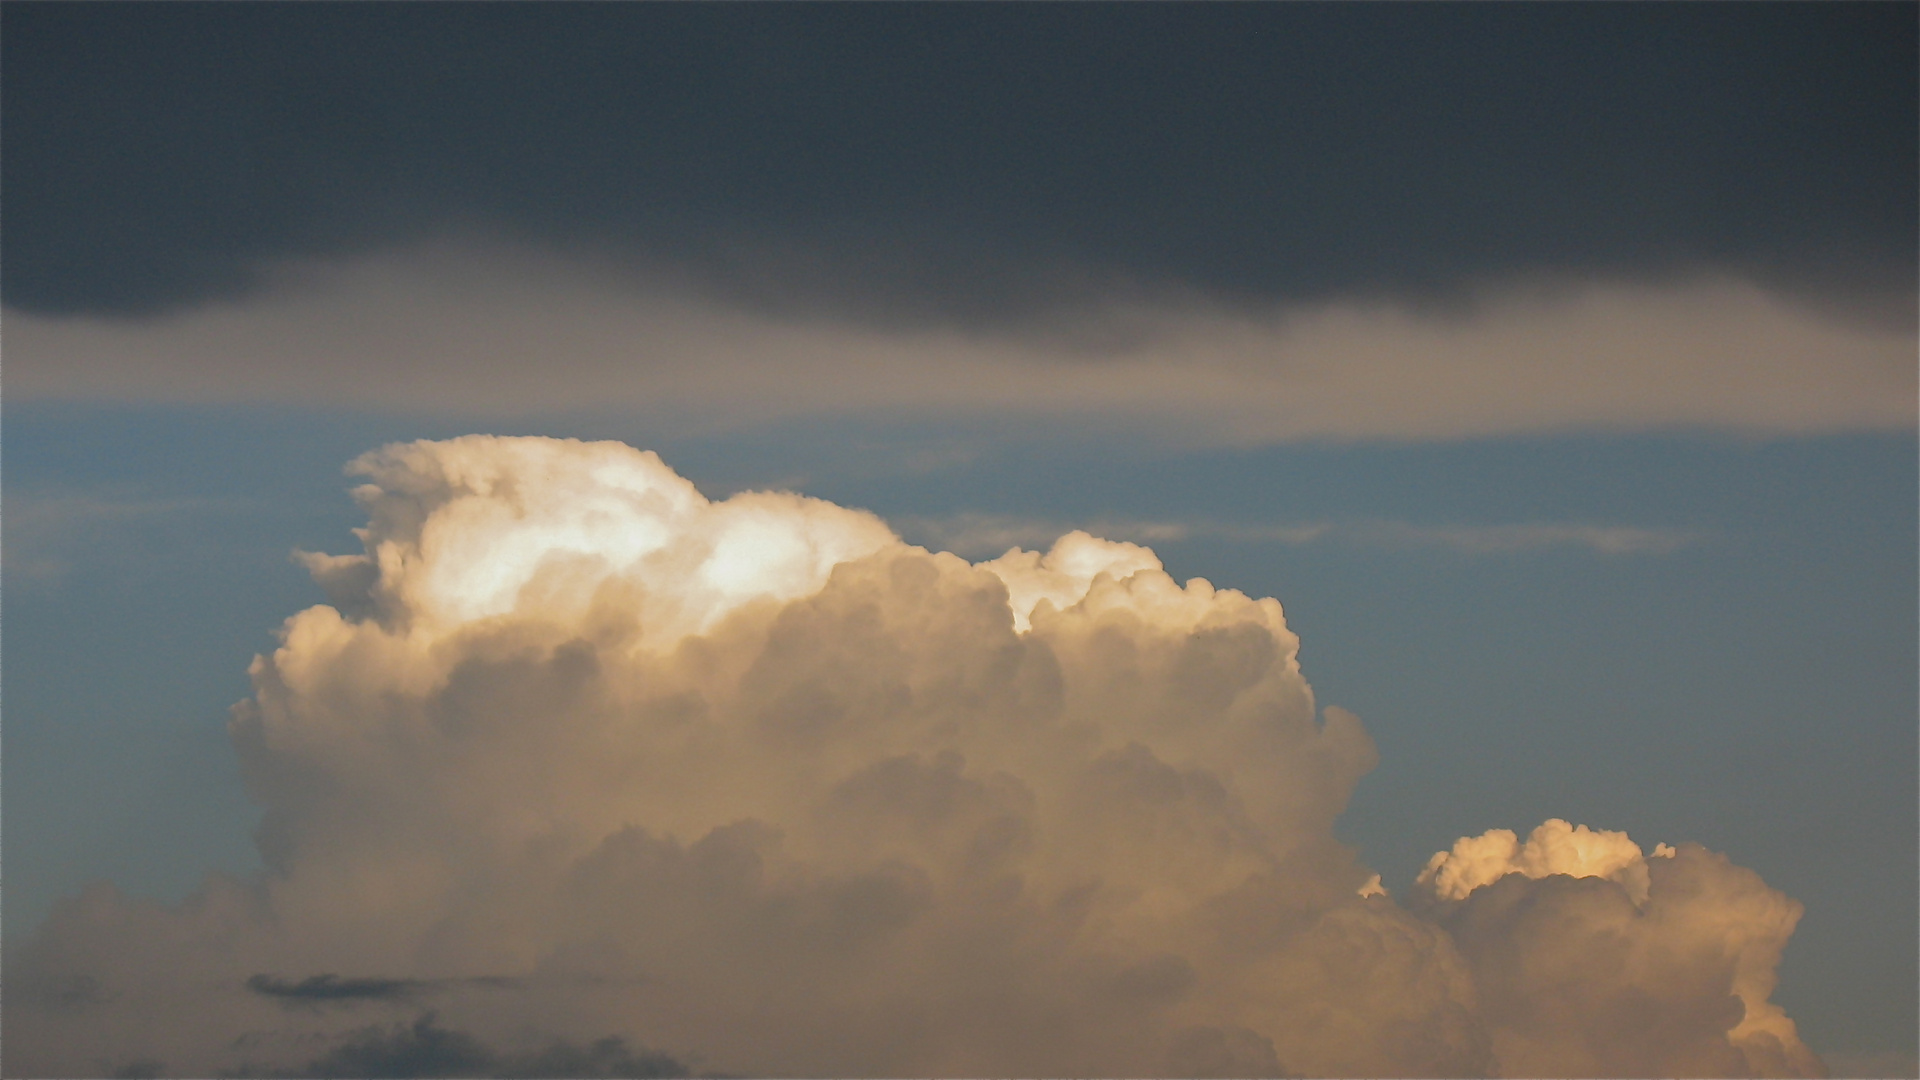 Am 20.5.2012 abends um 8 Uhr ist diese wunderschöne Cumuluswolke . . .